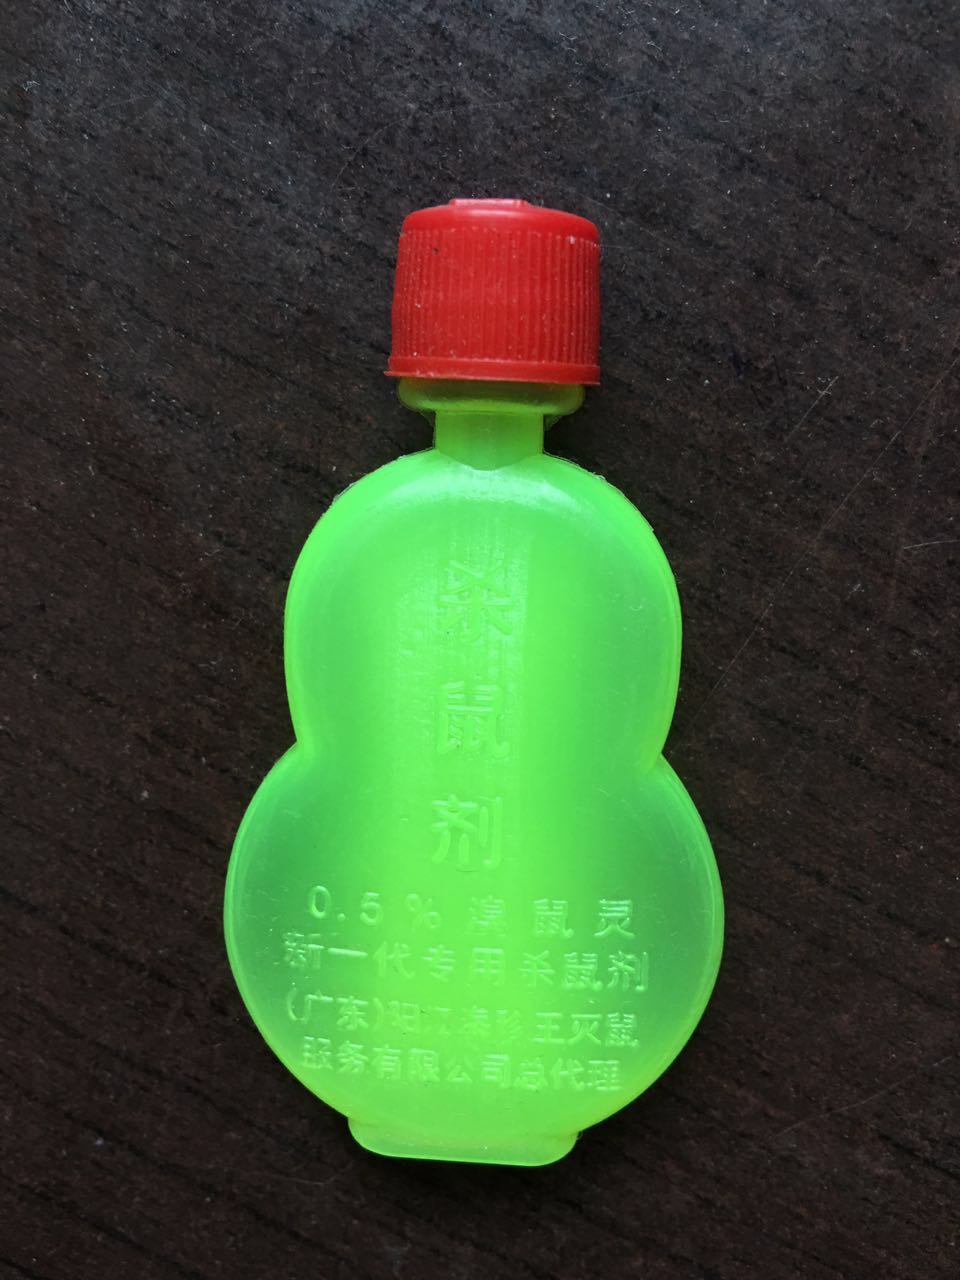 厂家供应葫芦塑料瓶、厂家直销10ml塑料瓶、葫芦塑料瓶价格批发